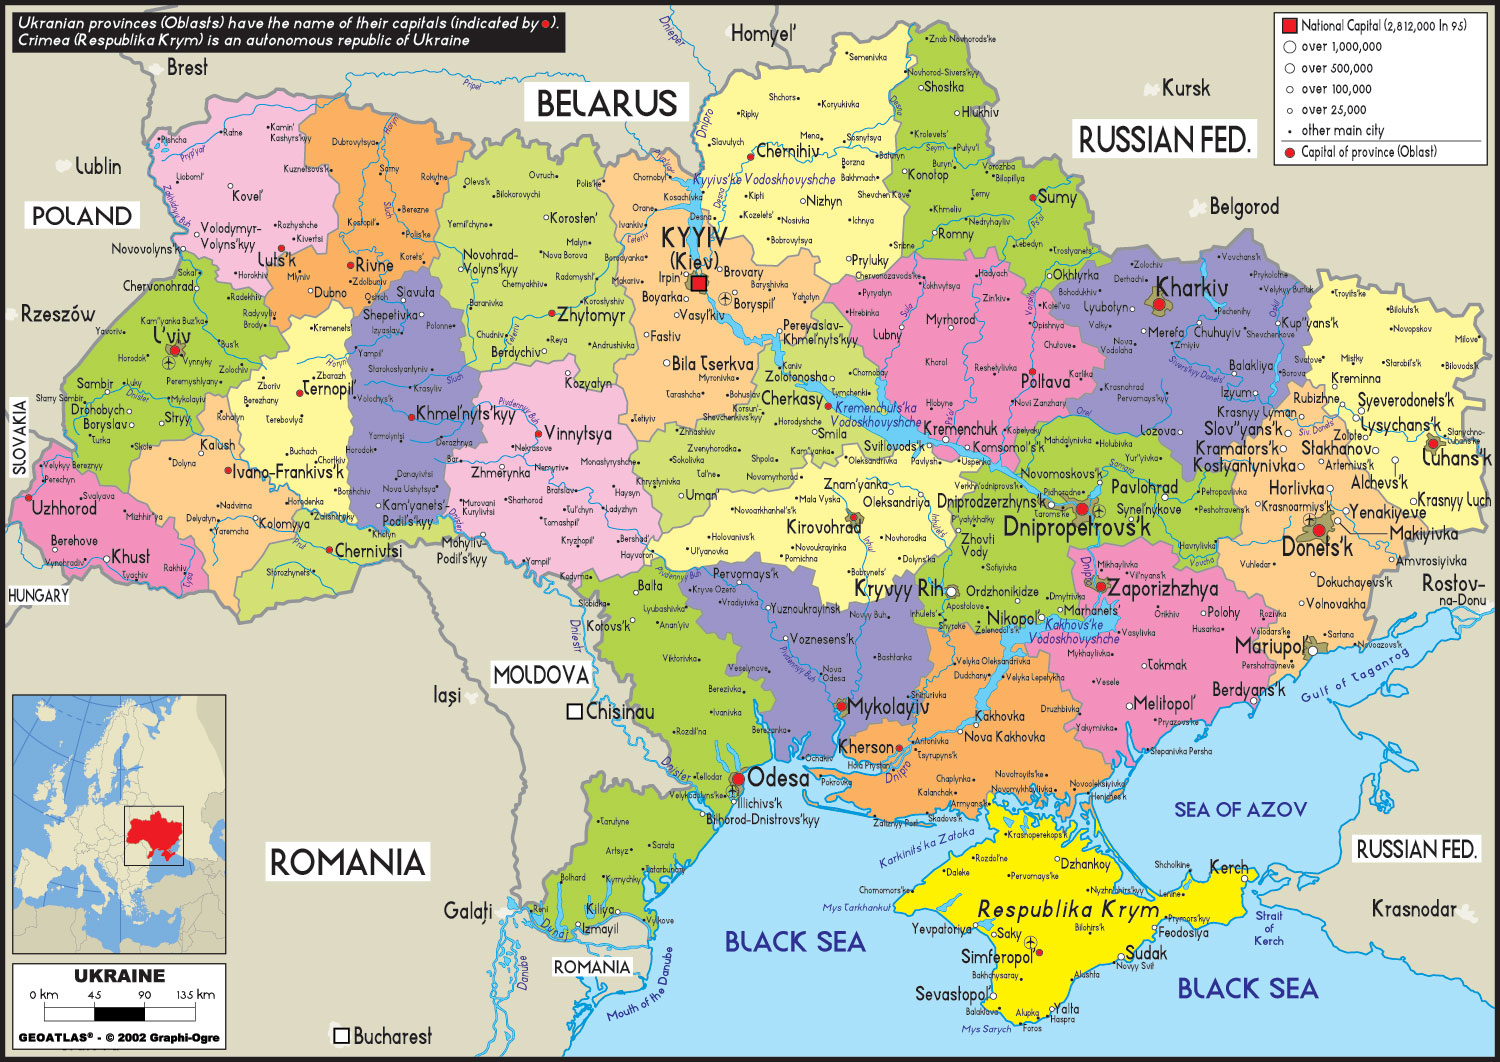 http://ukraineindia.org/wp-content/uploads/2010/12/ukrainemap.jpg